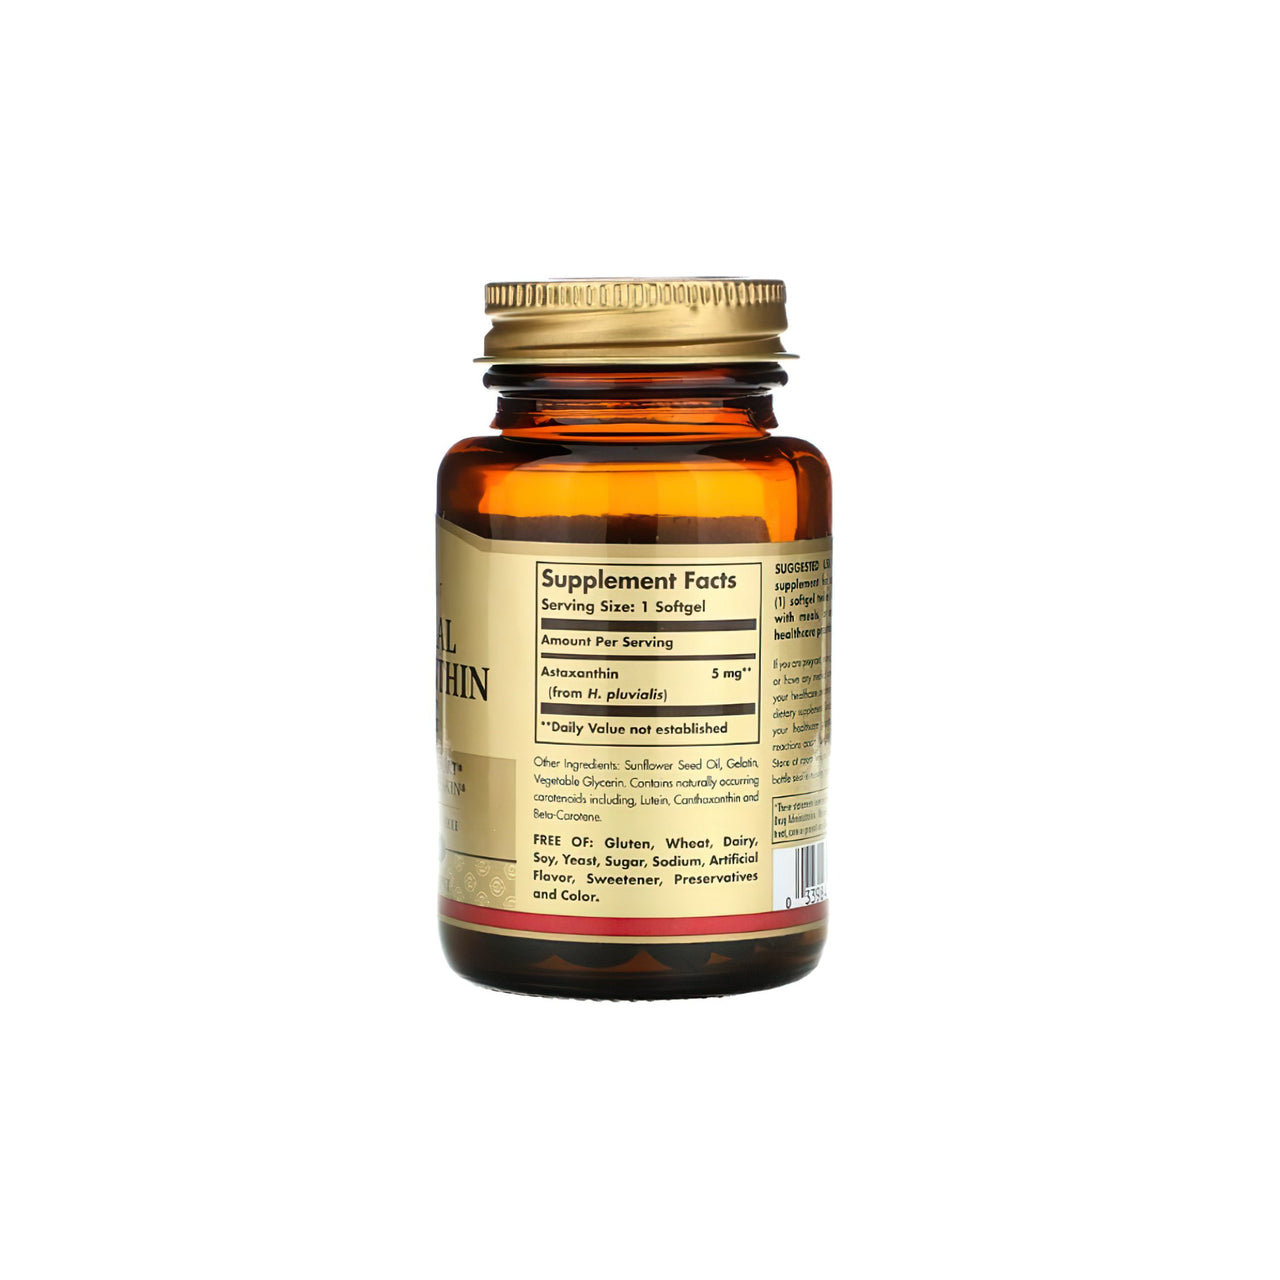 Une bouteille de vitamine C riche en antioxydants, enrichie d'un puissant ingrédient de soin de la peau Solgar Natural Astaxanthi 5 mg 30 softgel, présentée sur un fond blanc impeccable.